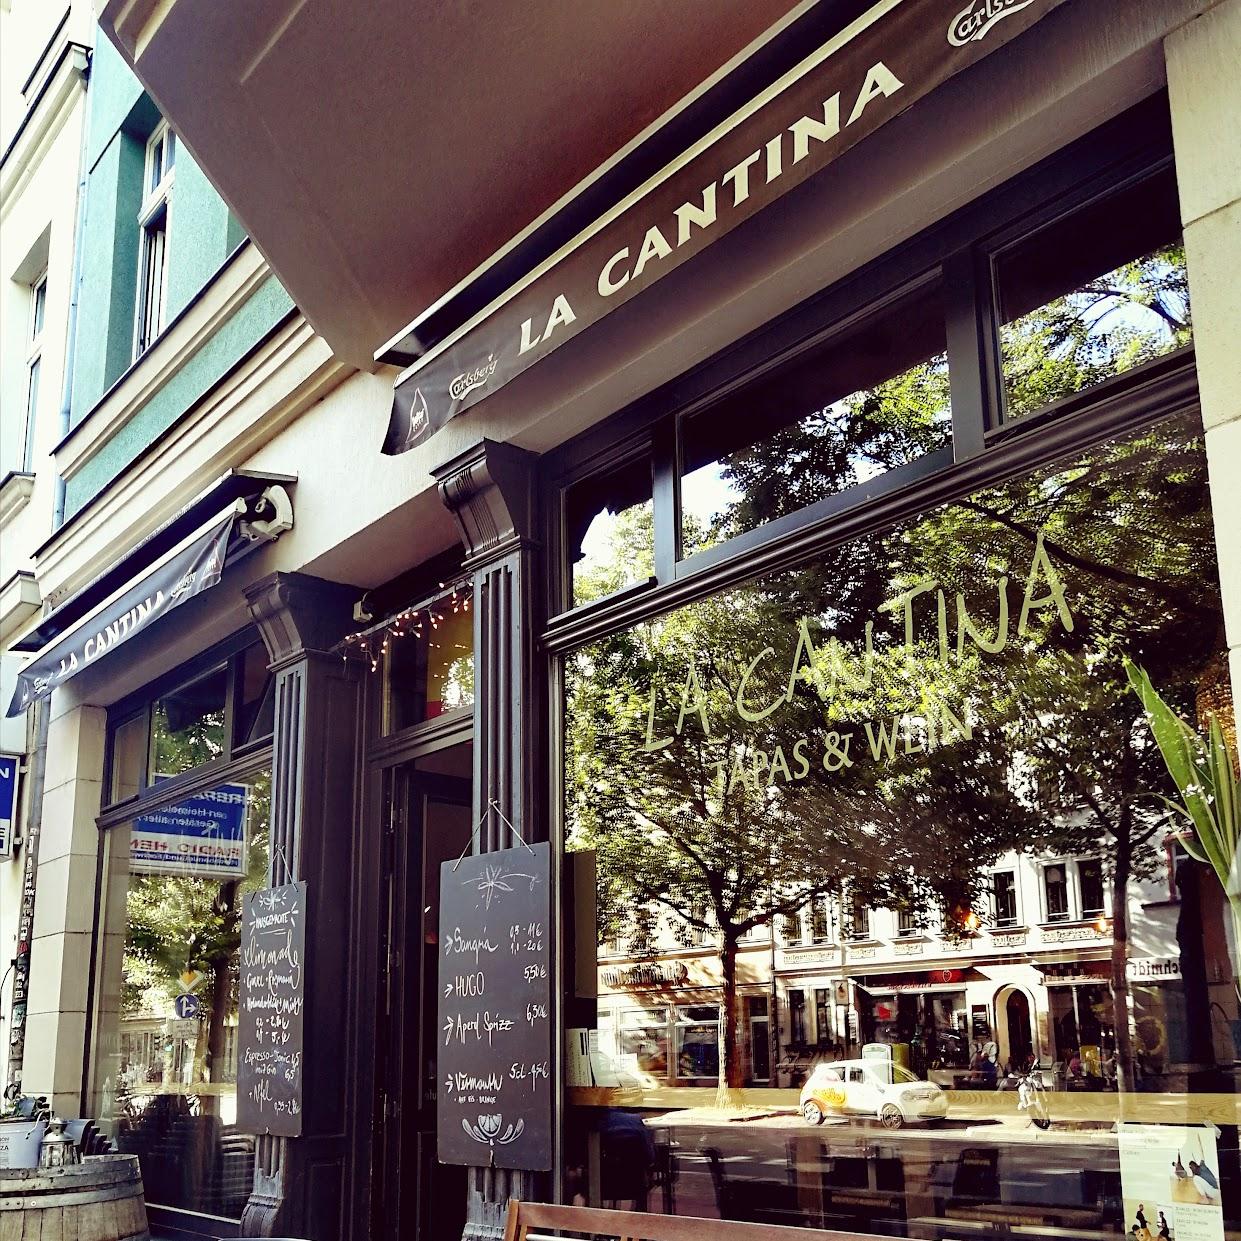 Restaurant "La Cantina" in Leipzig